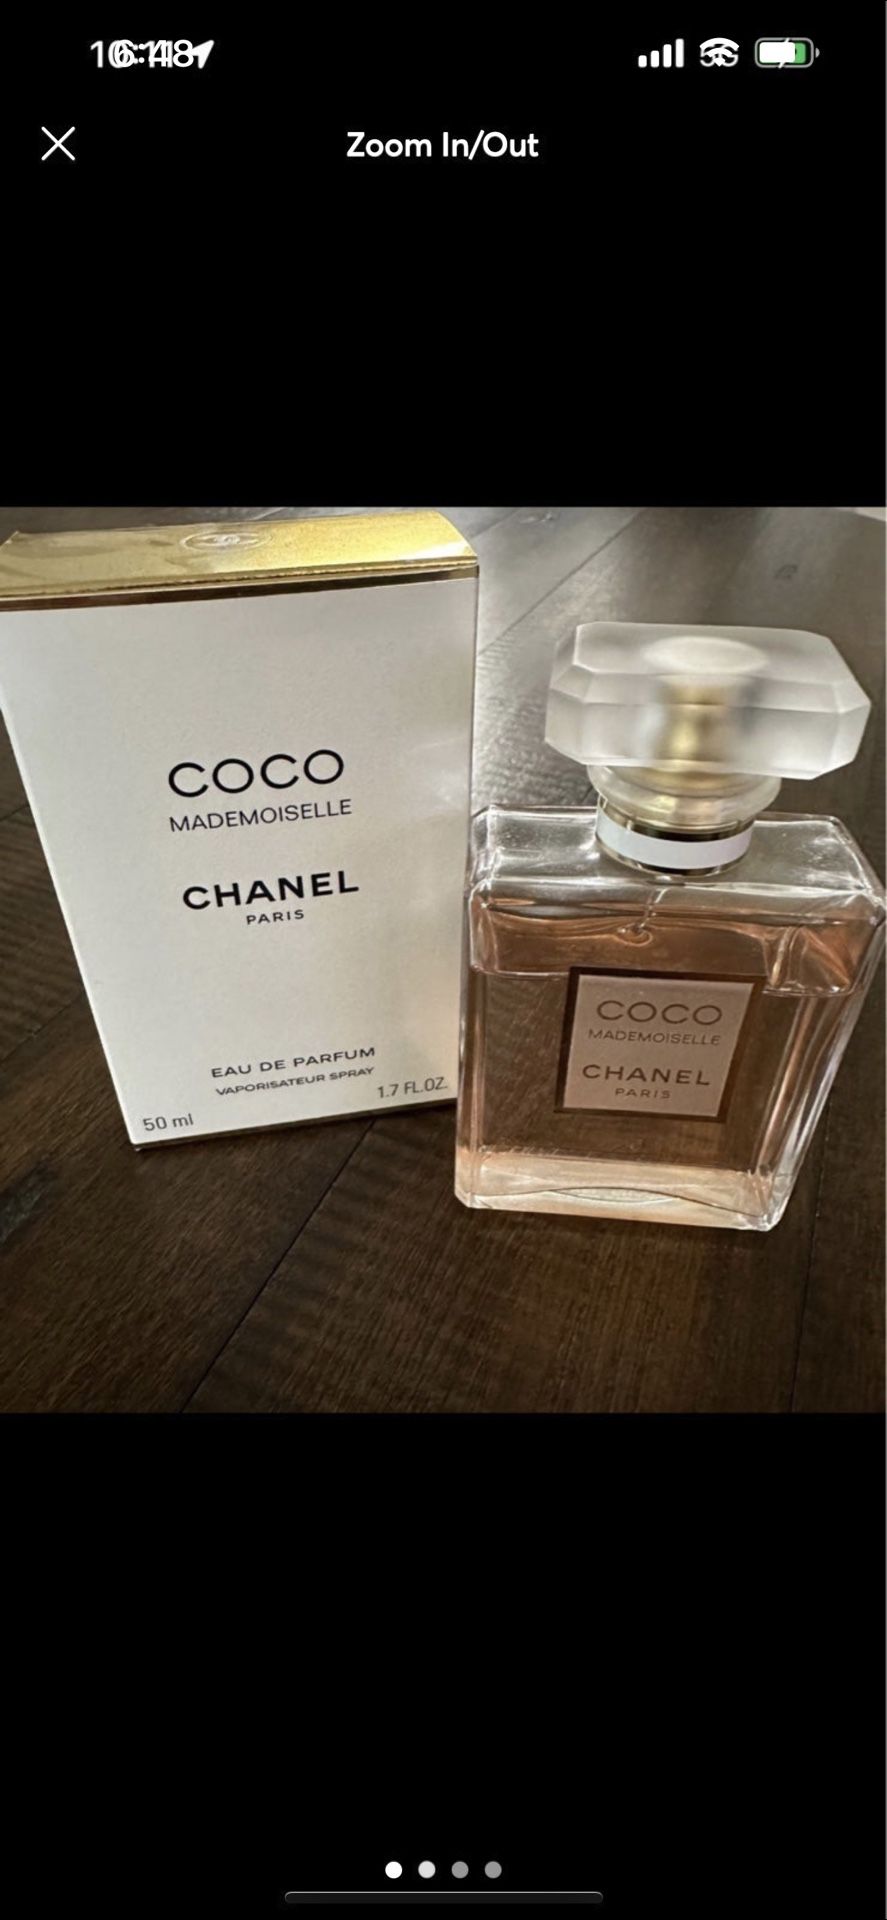 Chanel Coco Mademoiselle Eau De Parfum 1.7 fl oz